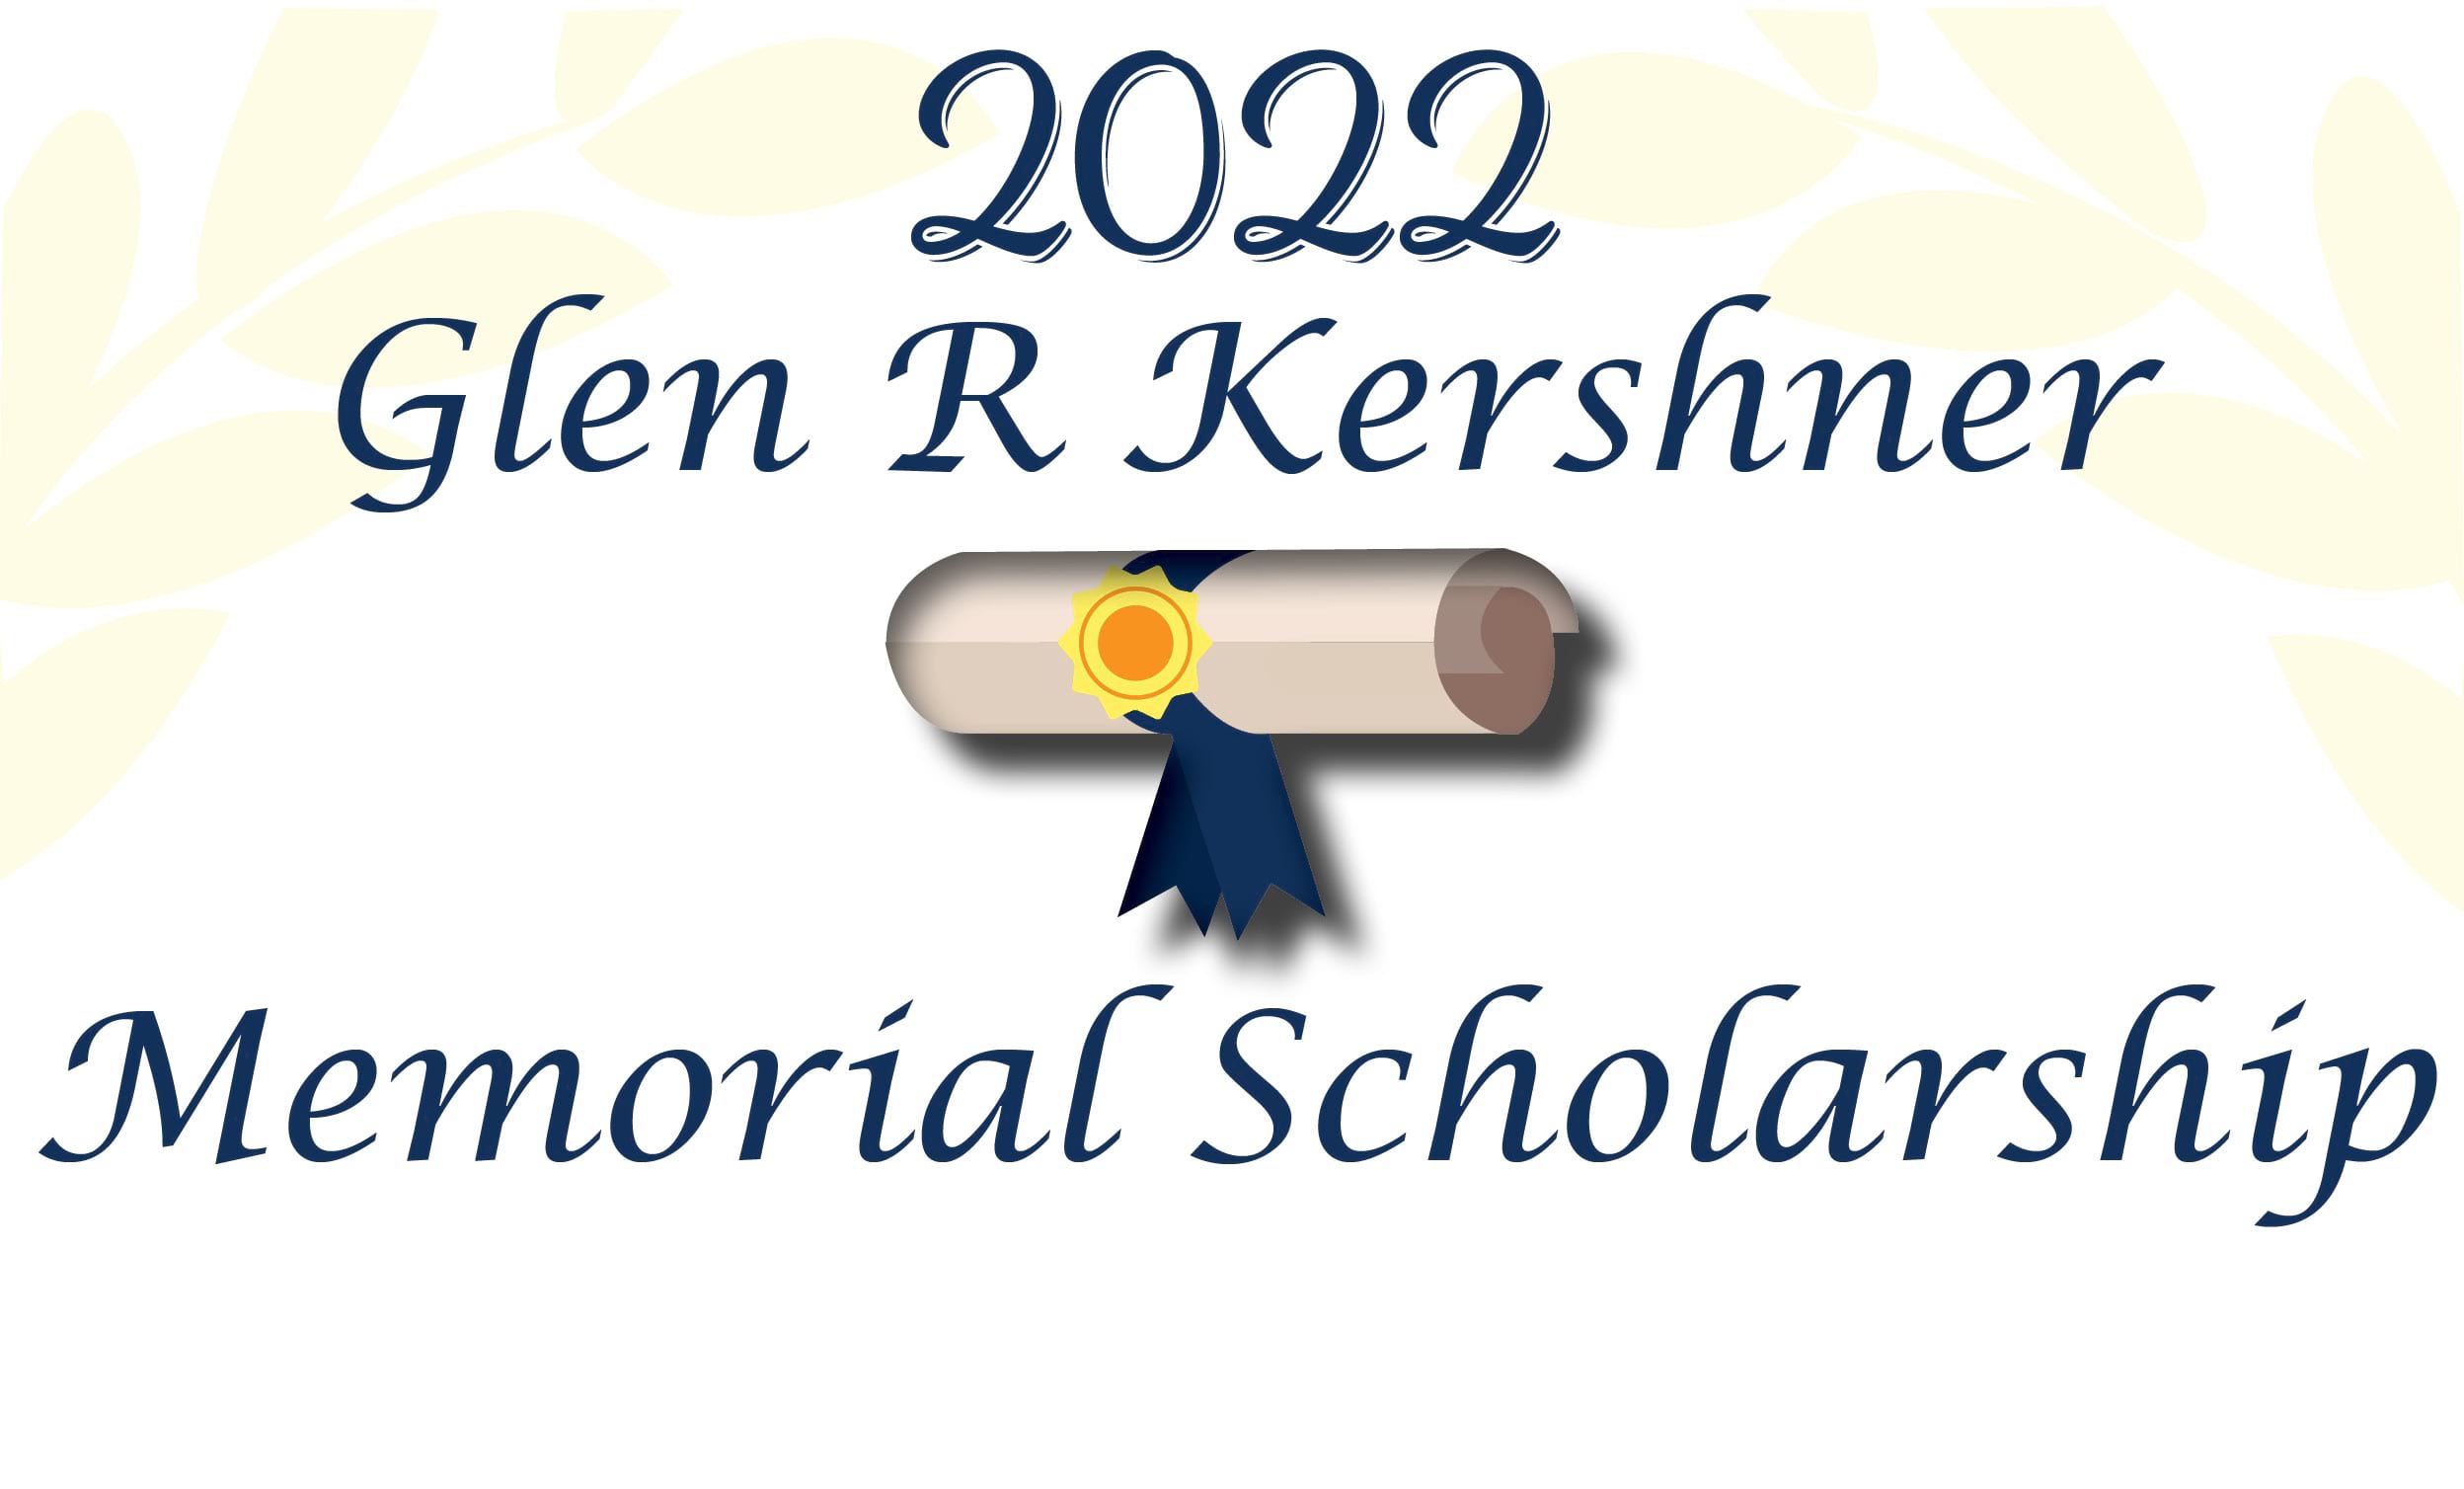 2022 Glen R Kershner Scholarship